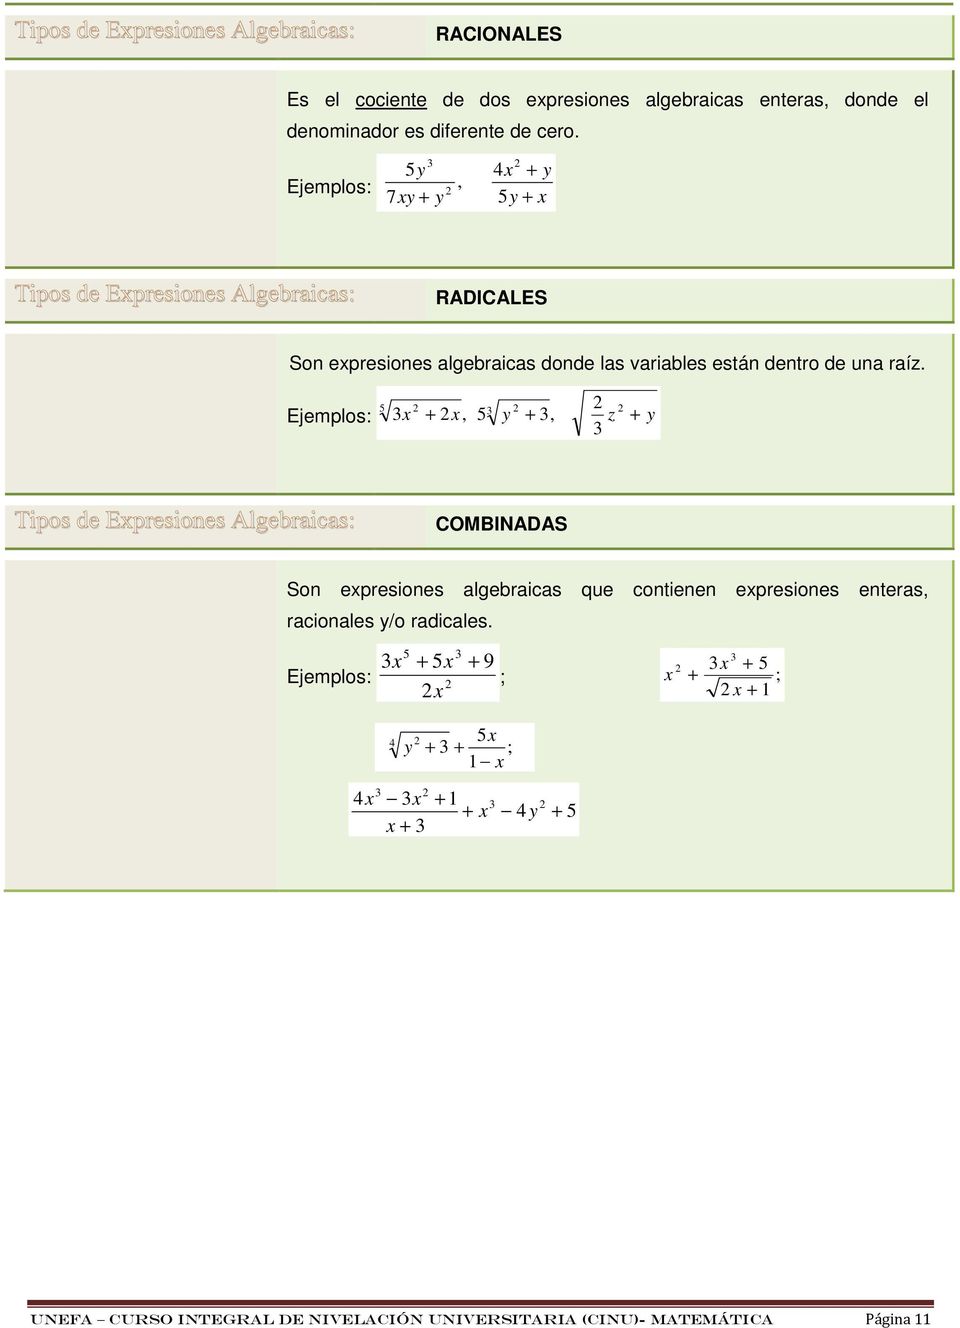 Ejemplos: +, 5 y +, z + y 5 Tipos de Epresiones Algebraicas: COMBINADAS Son epresiones algebraicas que contienen epresiones enteras, racionales